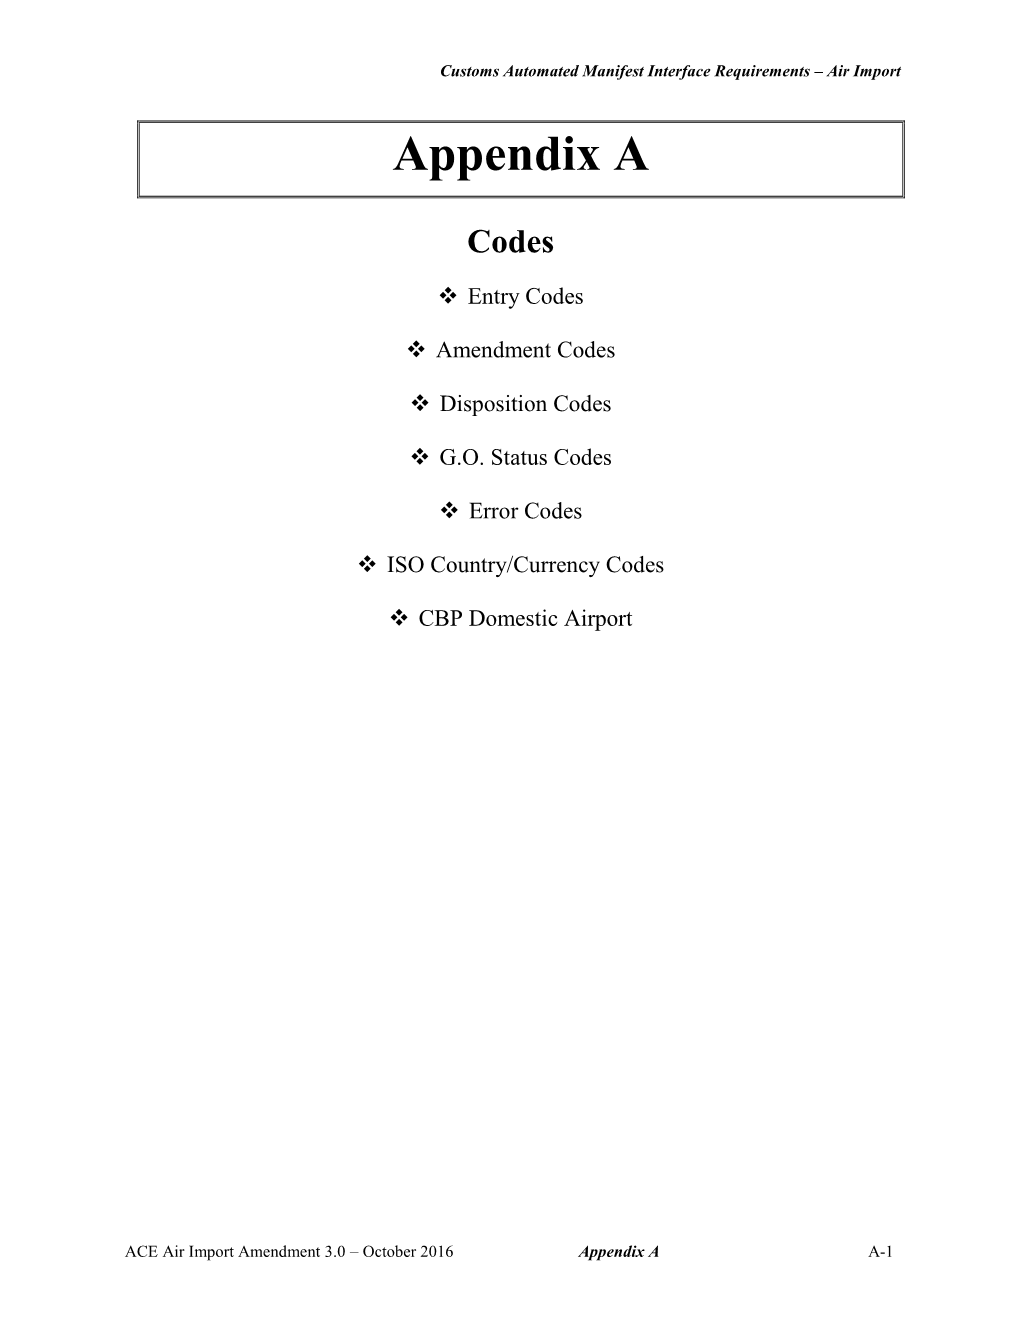 Air Import Appendix A